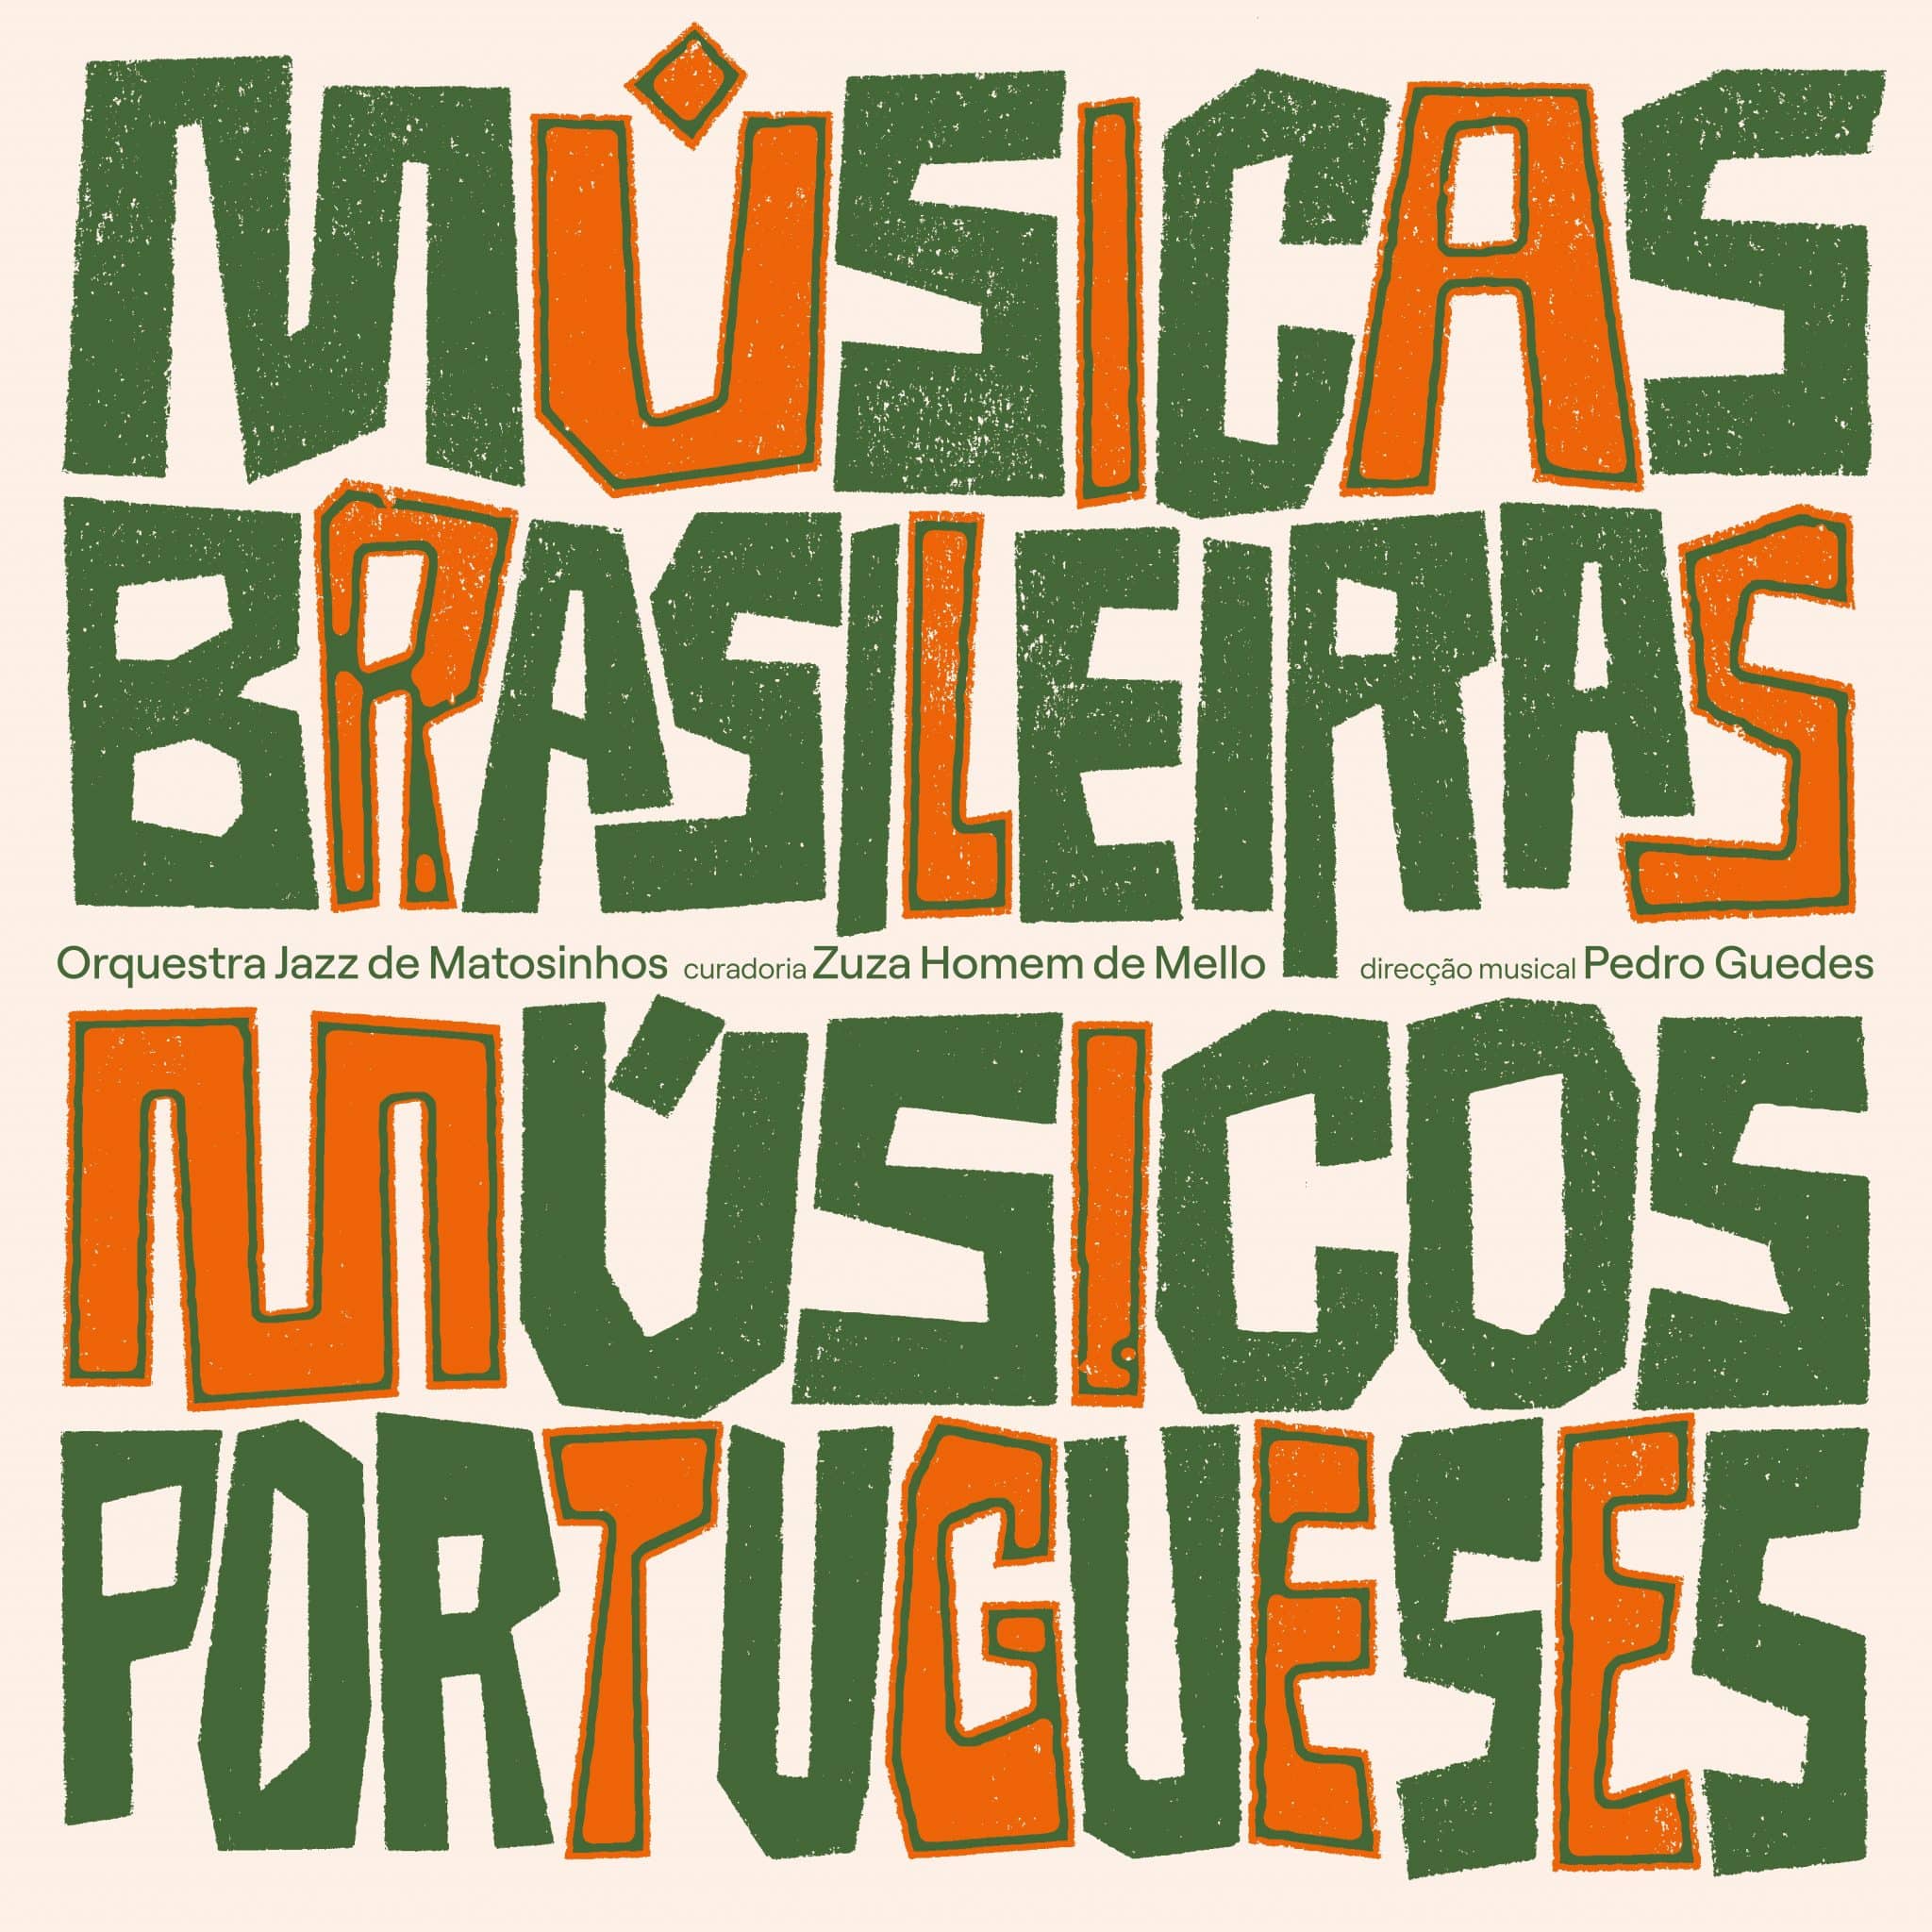 revistaprosaversoearte.com - Orquestra Jazz de Matosinhos lança álbum 'Músicas Brasileiras, Músicos Portugueses', com curadoria de Zuza Homem de Mello